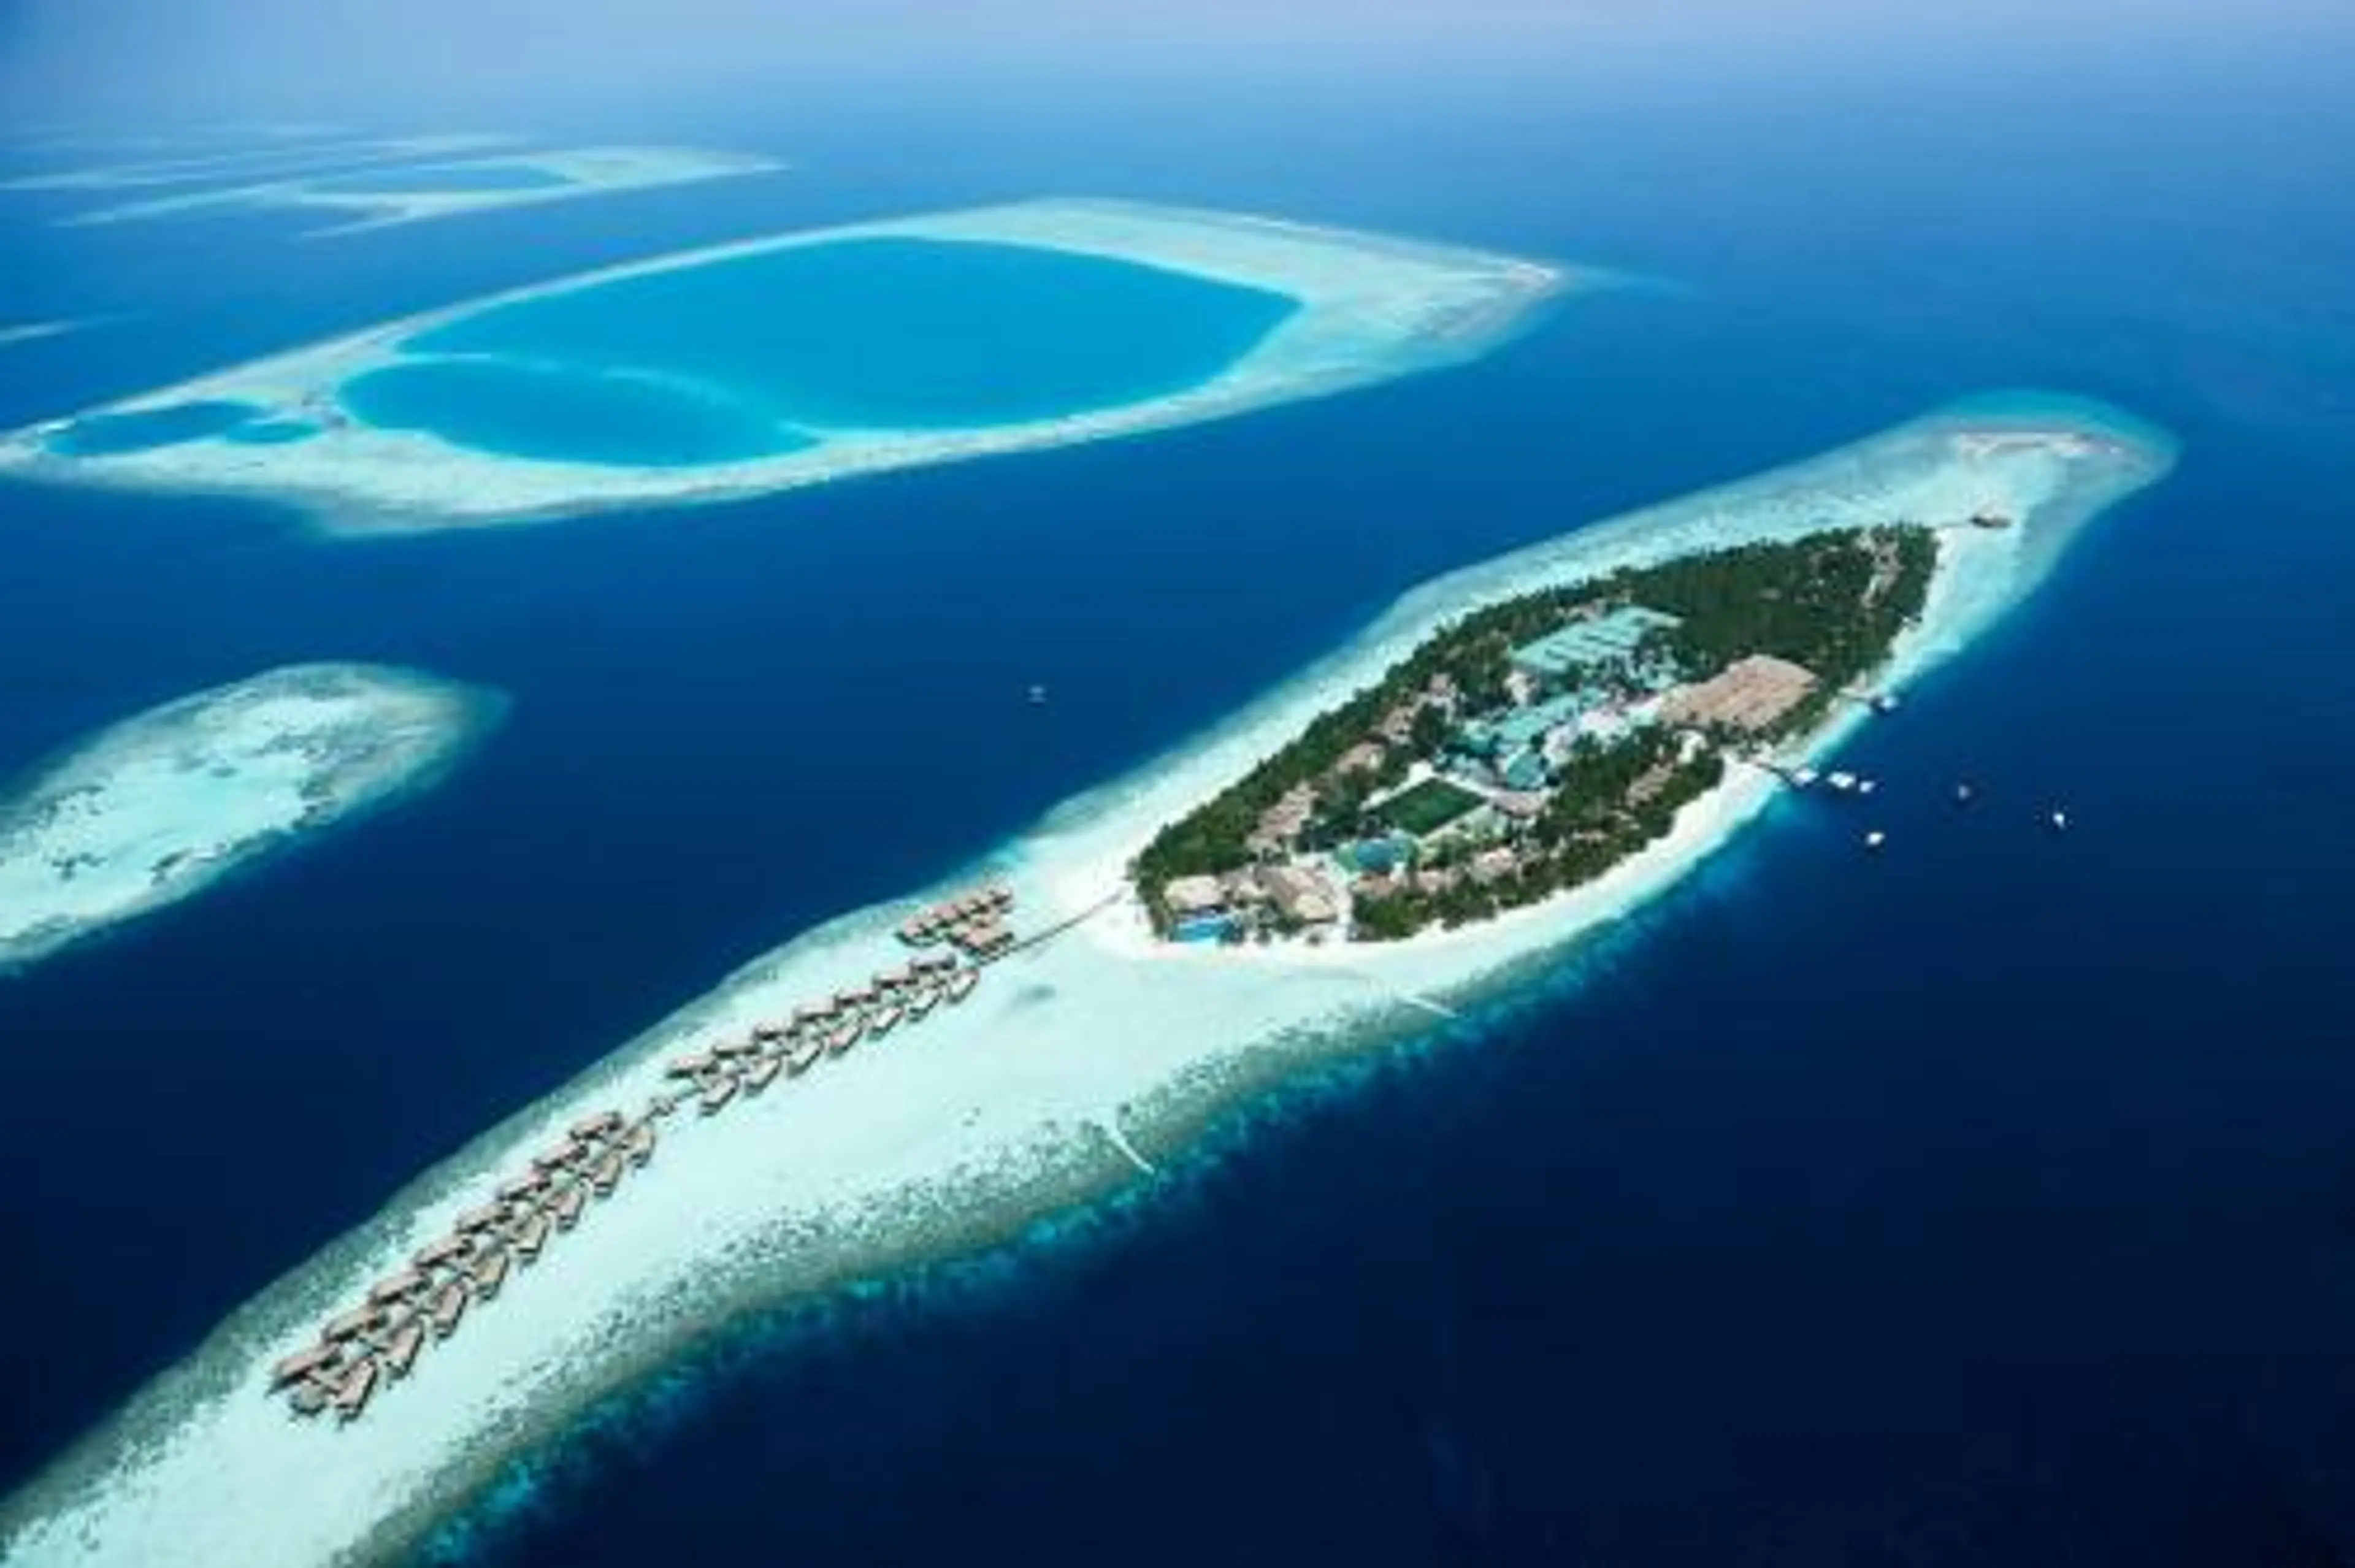 Maldives' atolls